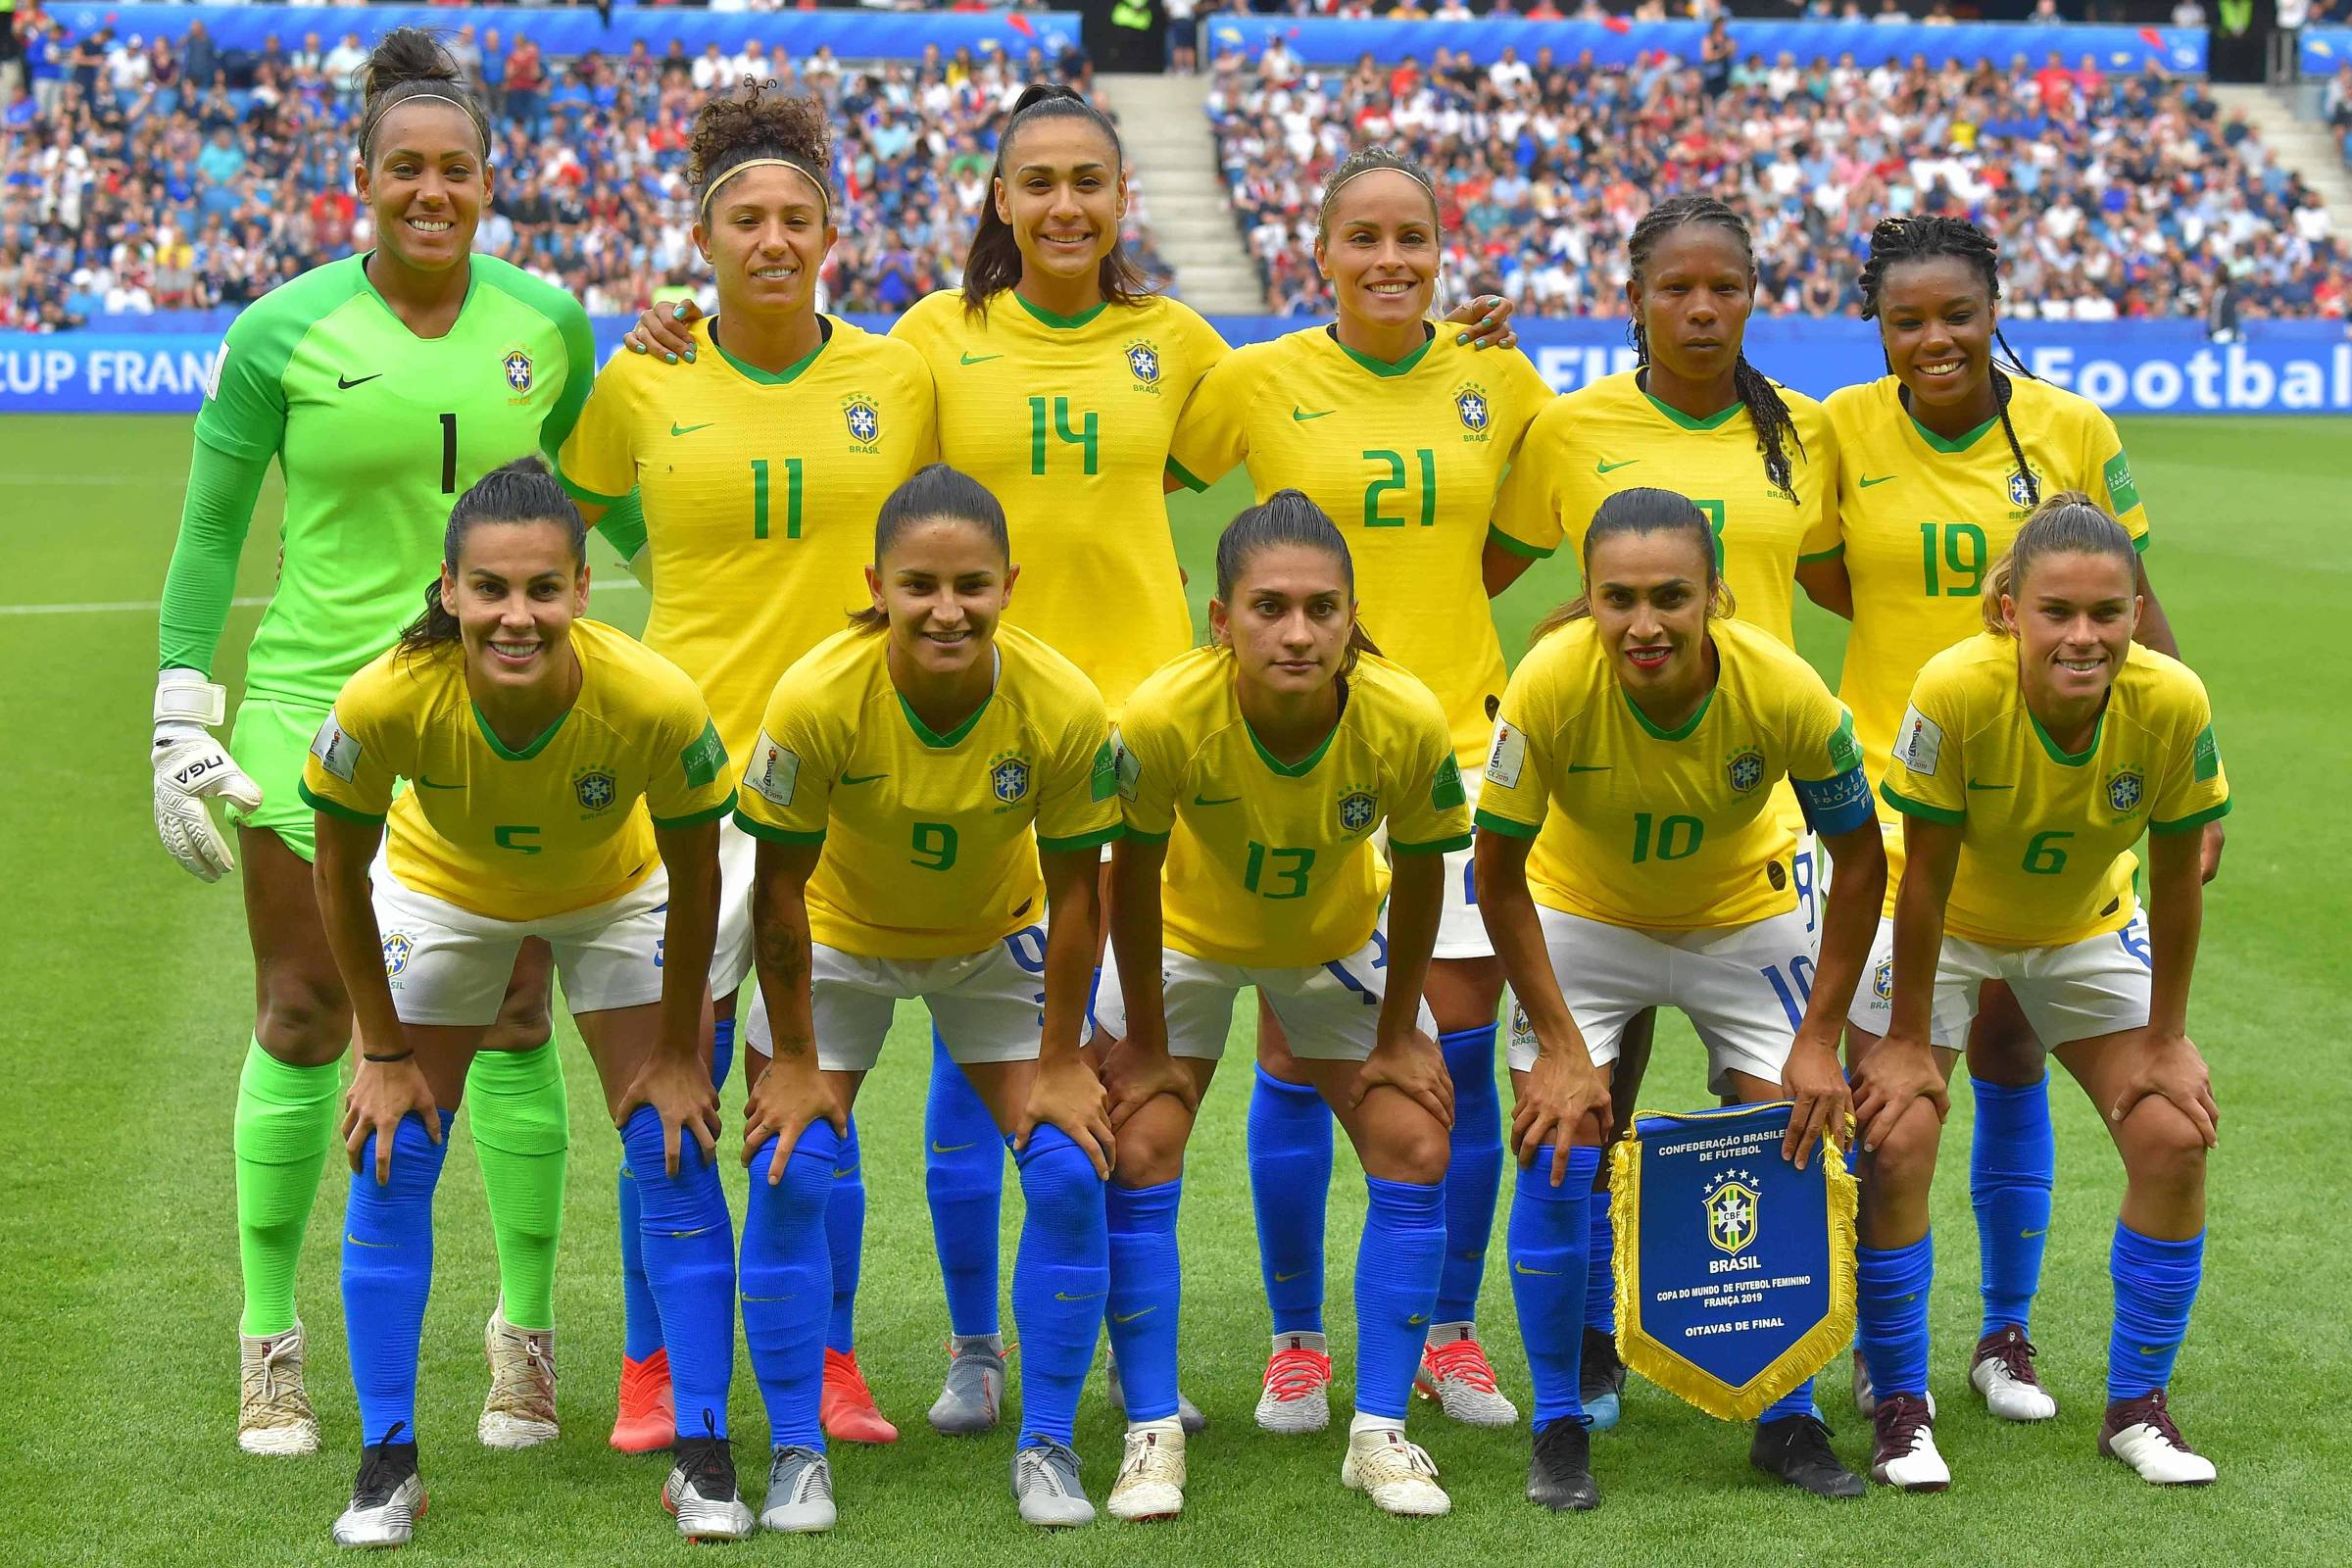 Seleção feminina 2019